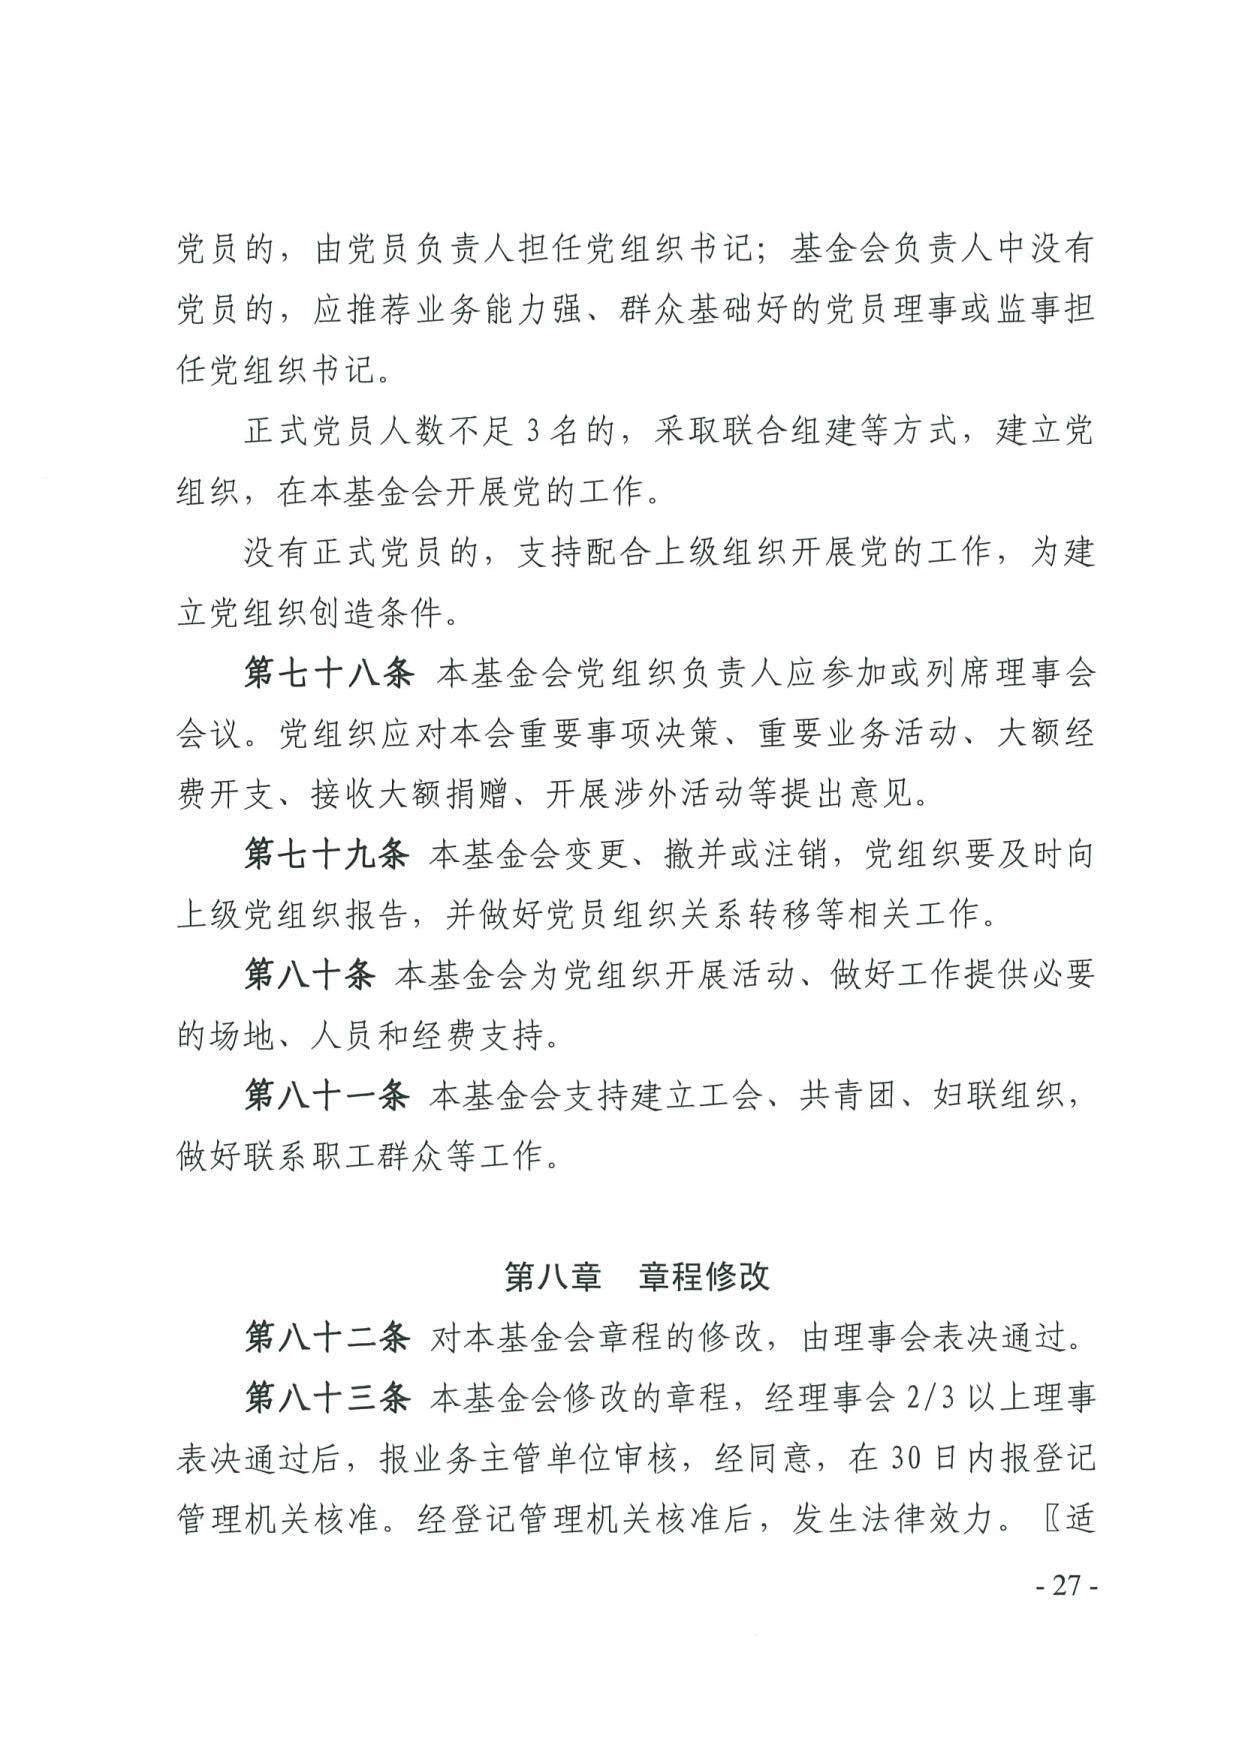 广东省民政厅关于印发《广东省基金会章程示范文本》的通知(4)_27.jpg